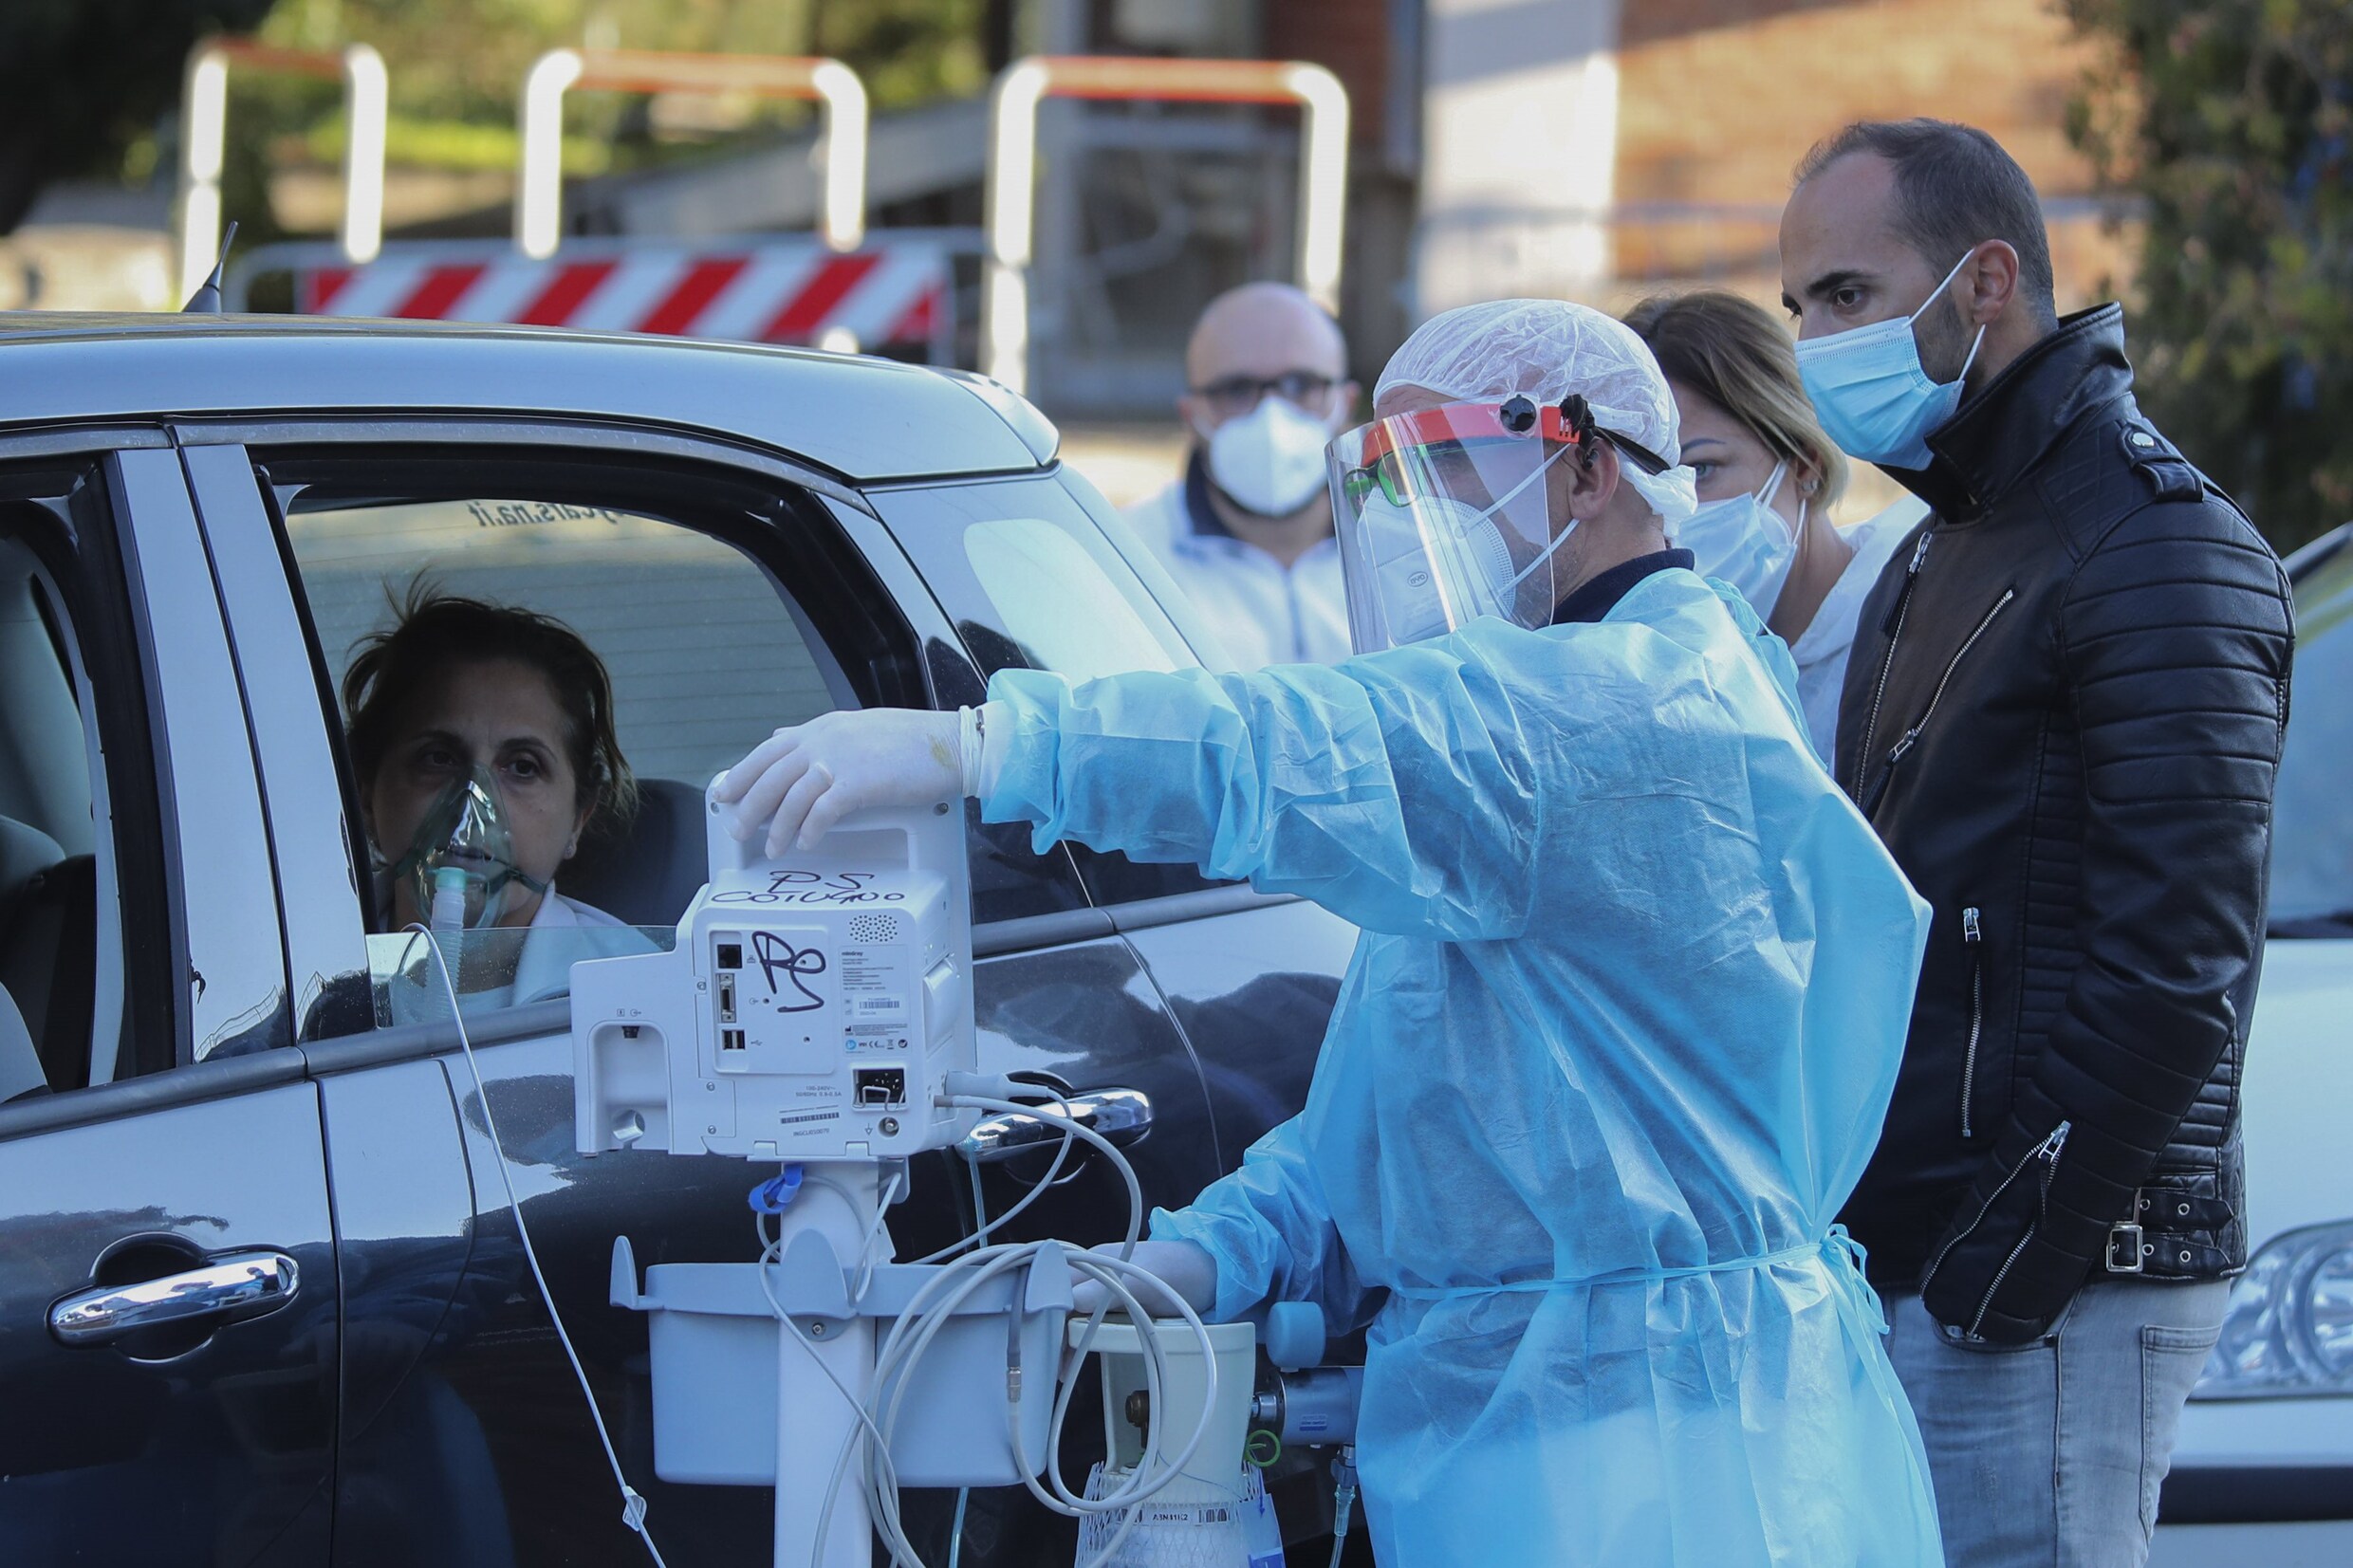 ▶ Toestand in Italië opnieuw precair, blijkt uit nieuwe beelden: patiënten krijgen zuurstof op parking van ziekenhuis